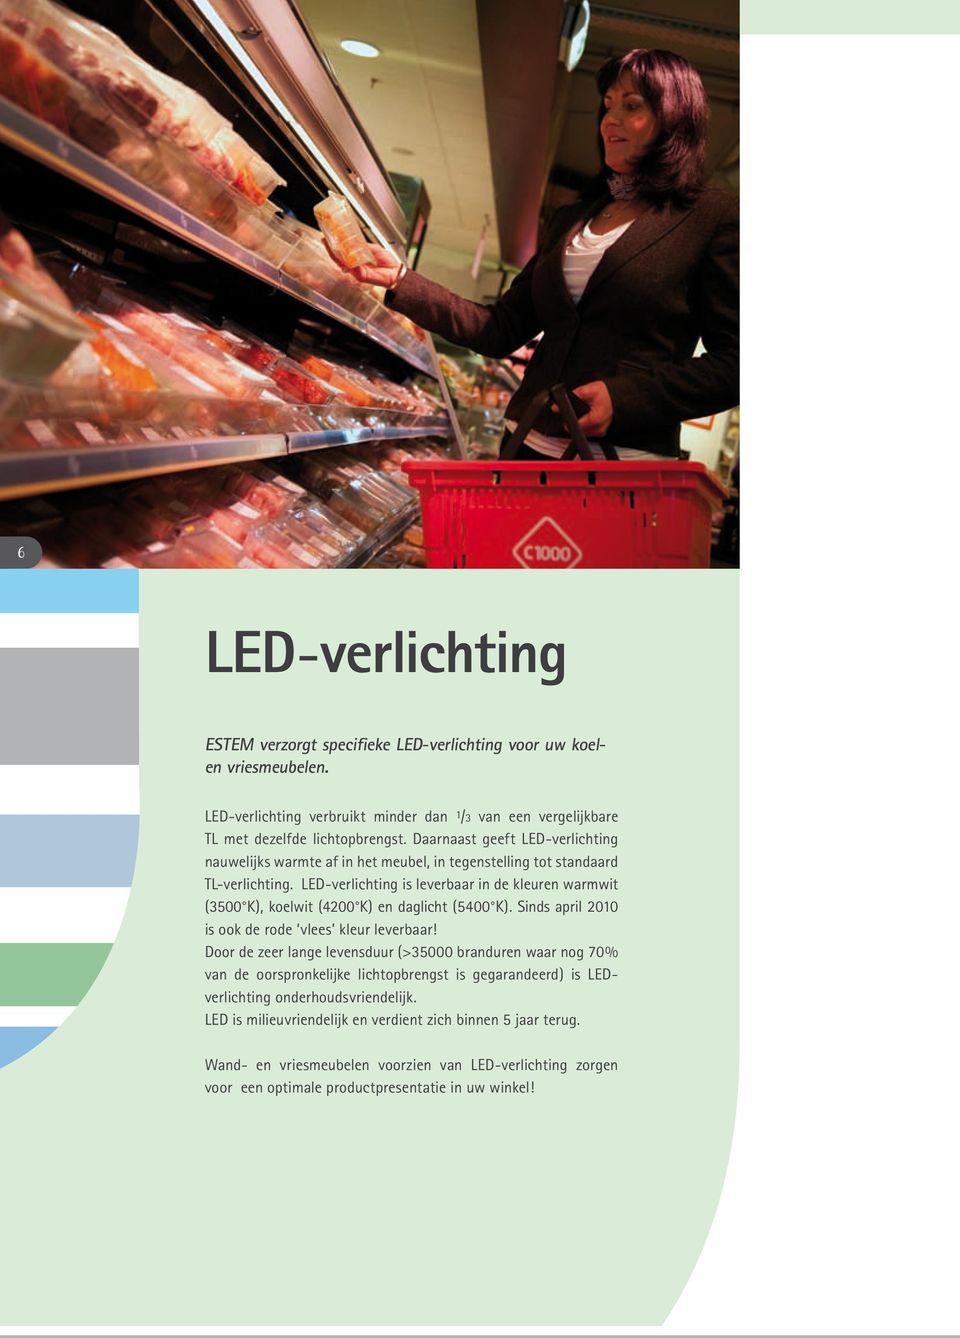 LED-verlichting is leverbaar in de kleuren warmwit (3500 K), koelwit (4200 K) en daglicht (5400 K). Sinds april 2010 is ook de rode vlees kleur leverbaar!